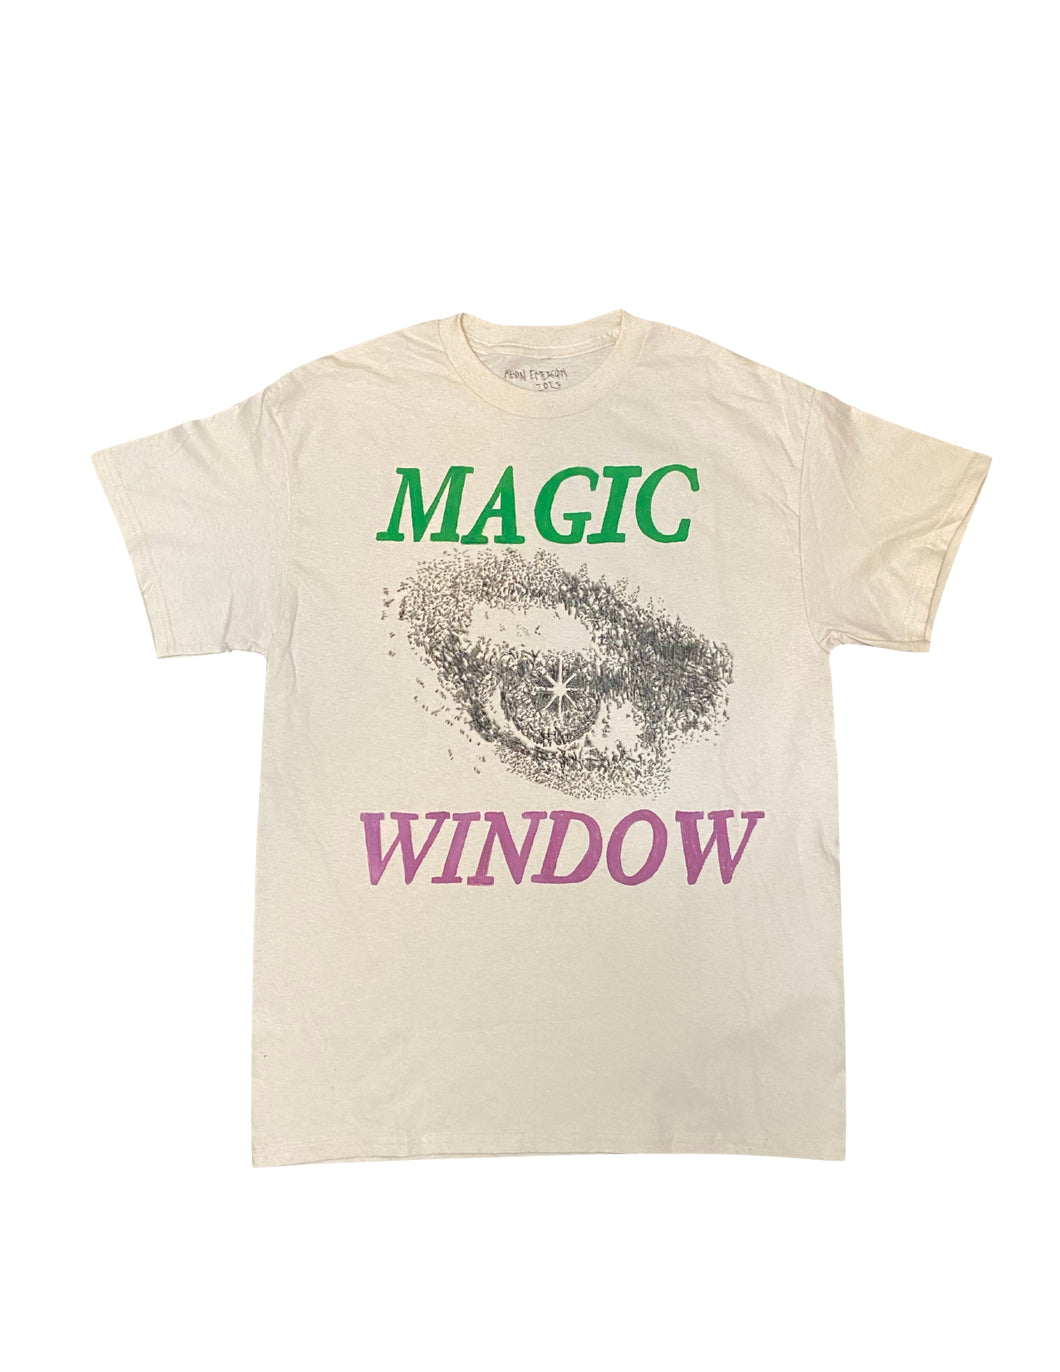 MAGIC WINDOW